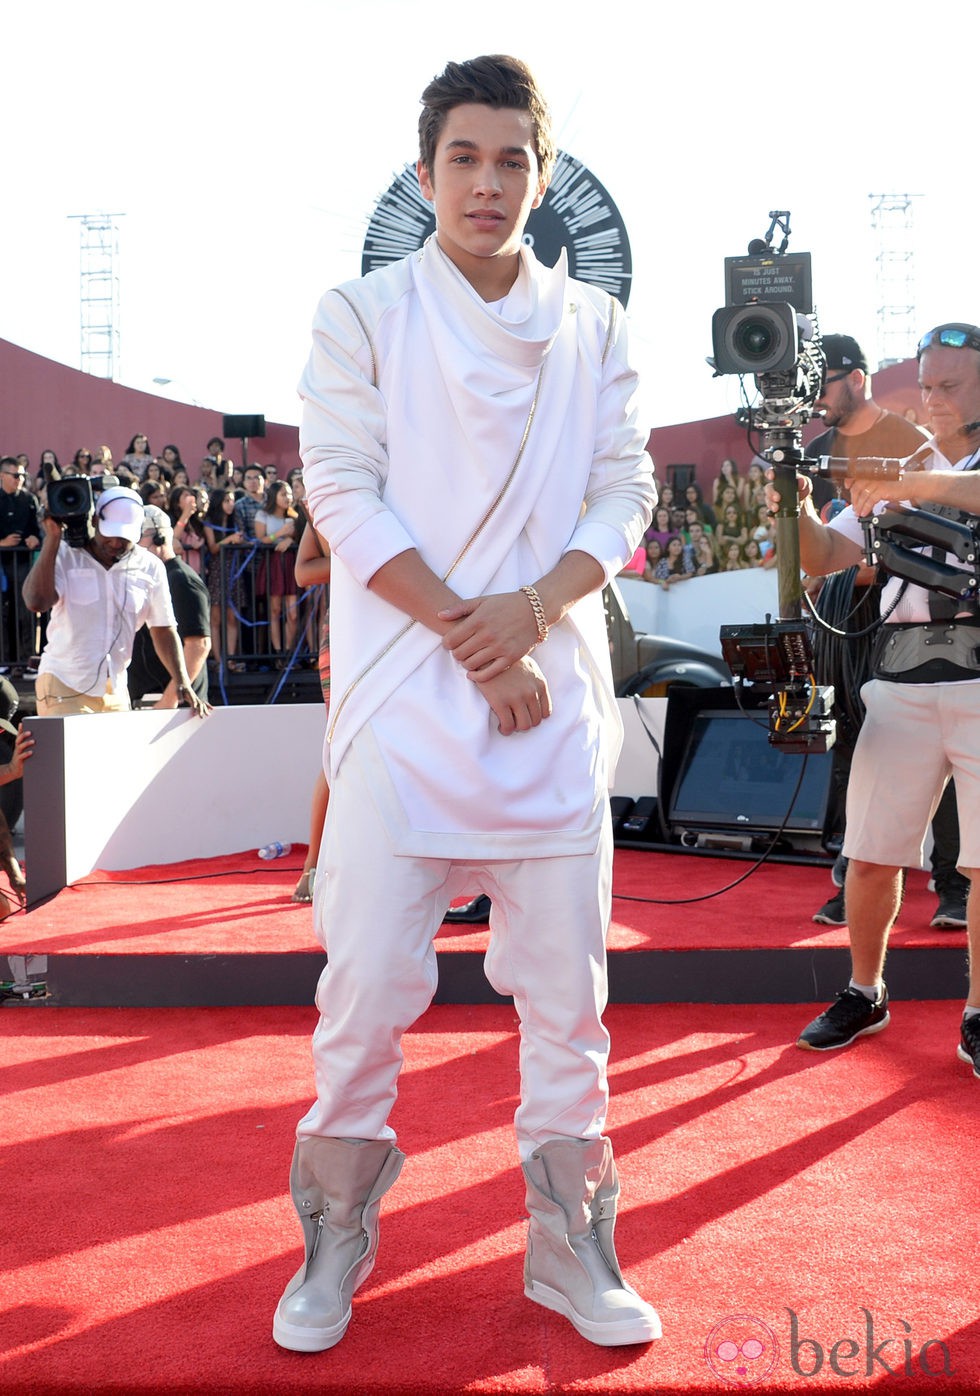 Austin Mahone en la alfombra roja de los MTV Video Music Awards 2014